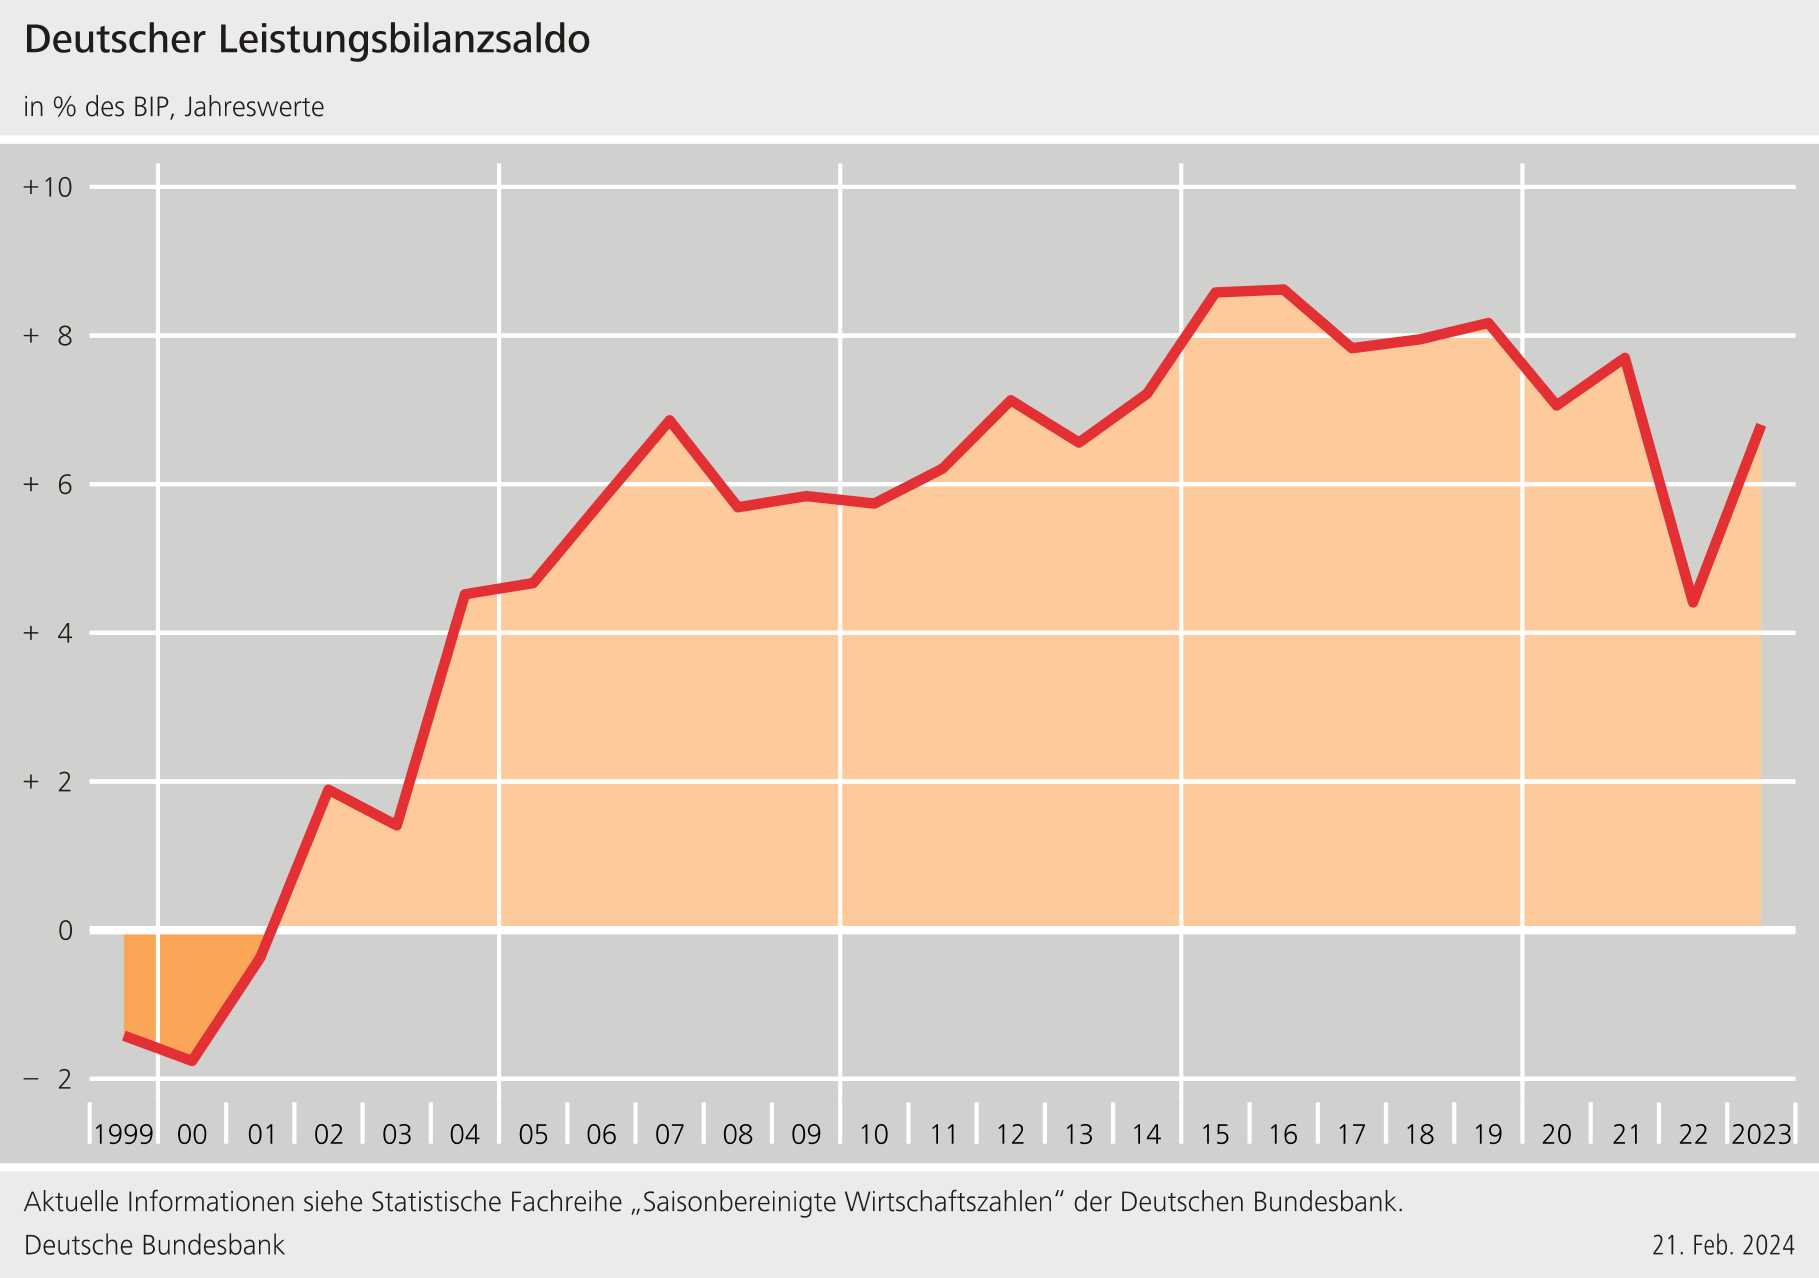 Leistungsbilanzsaldo in % des BIP